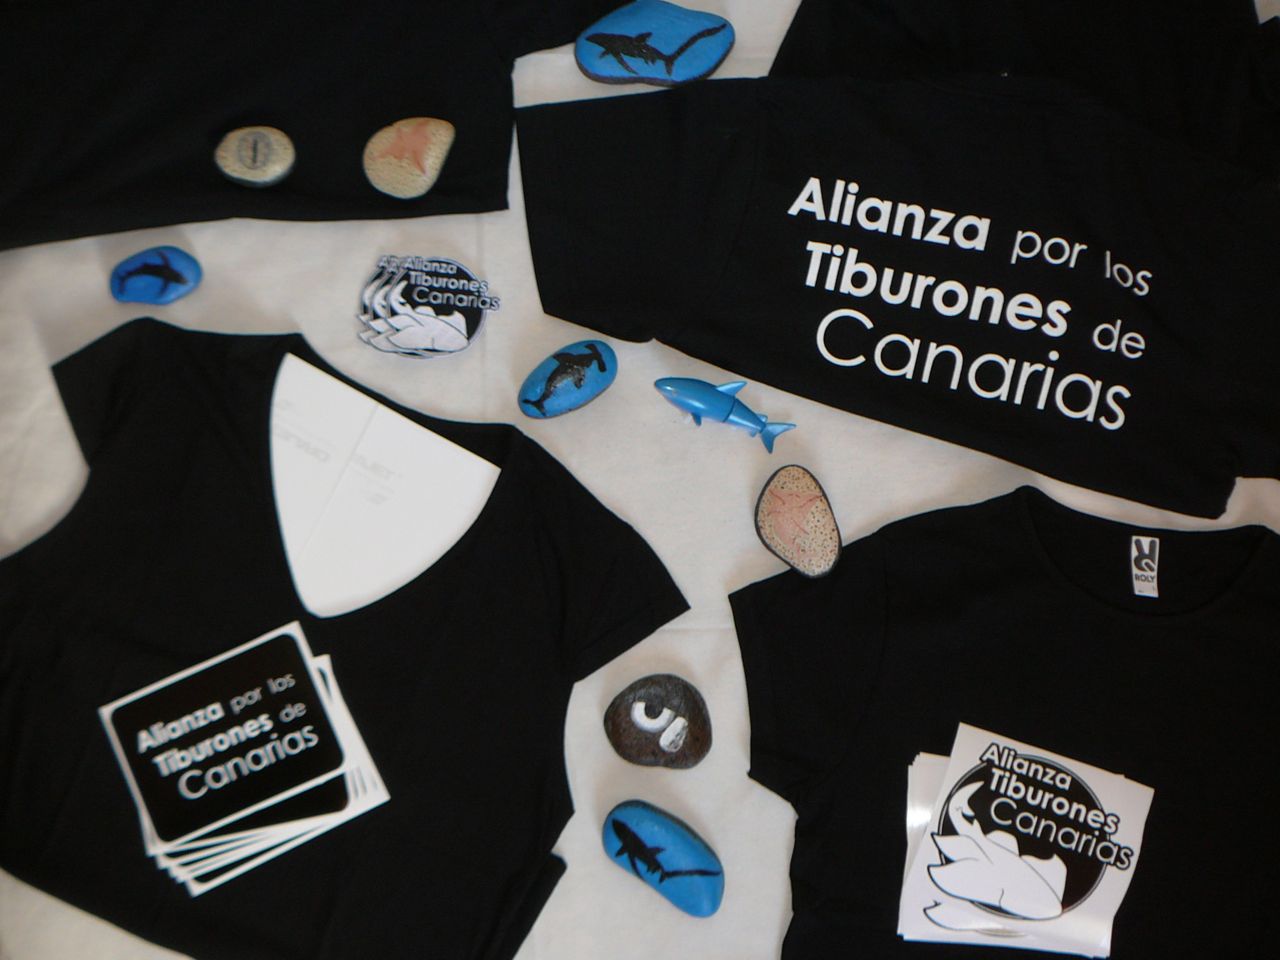 Alianza_Tiburones_Canarias